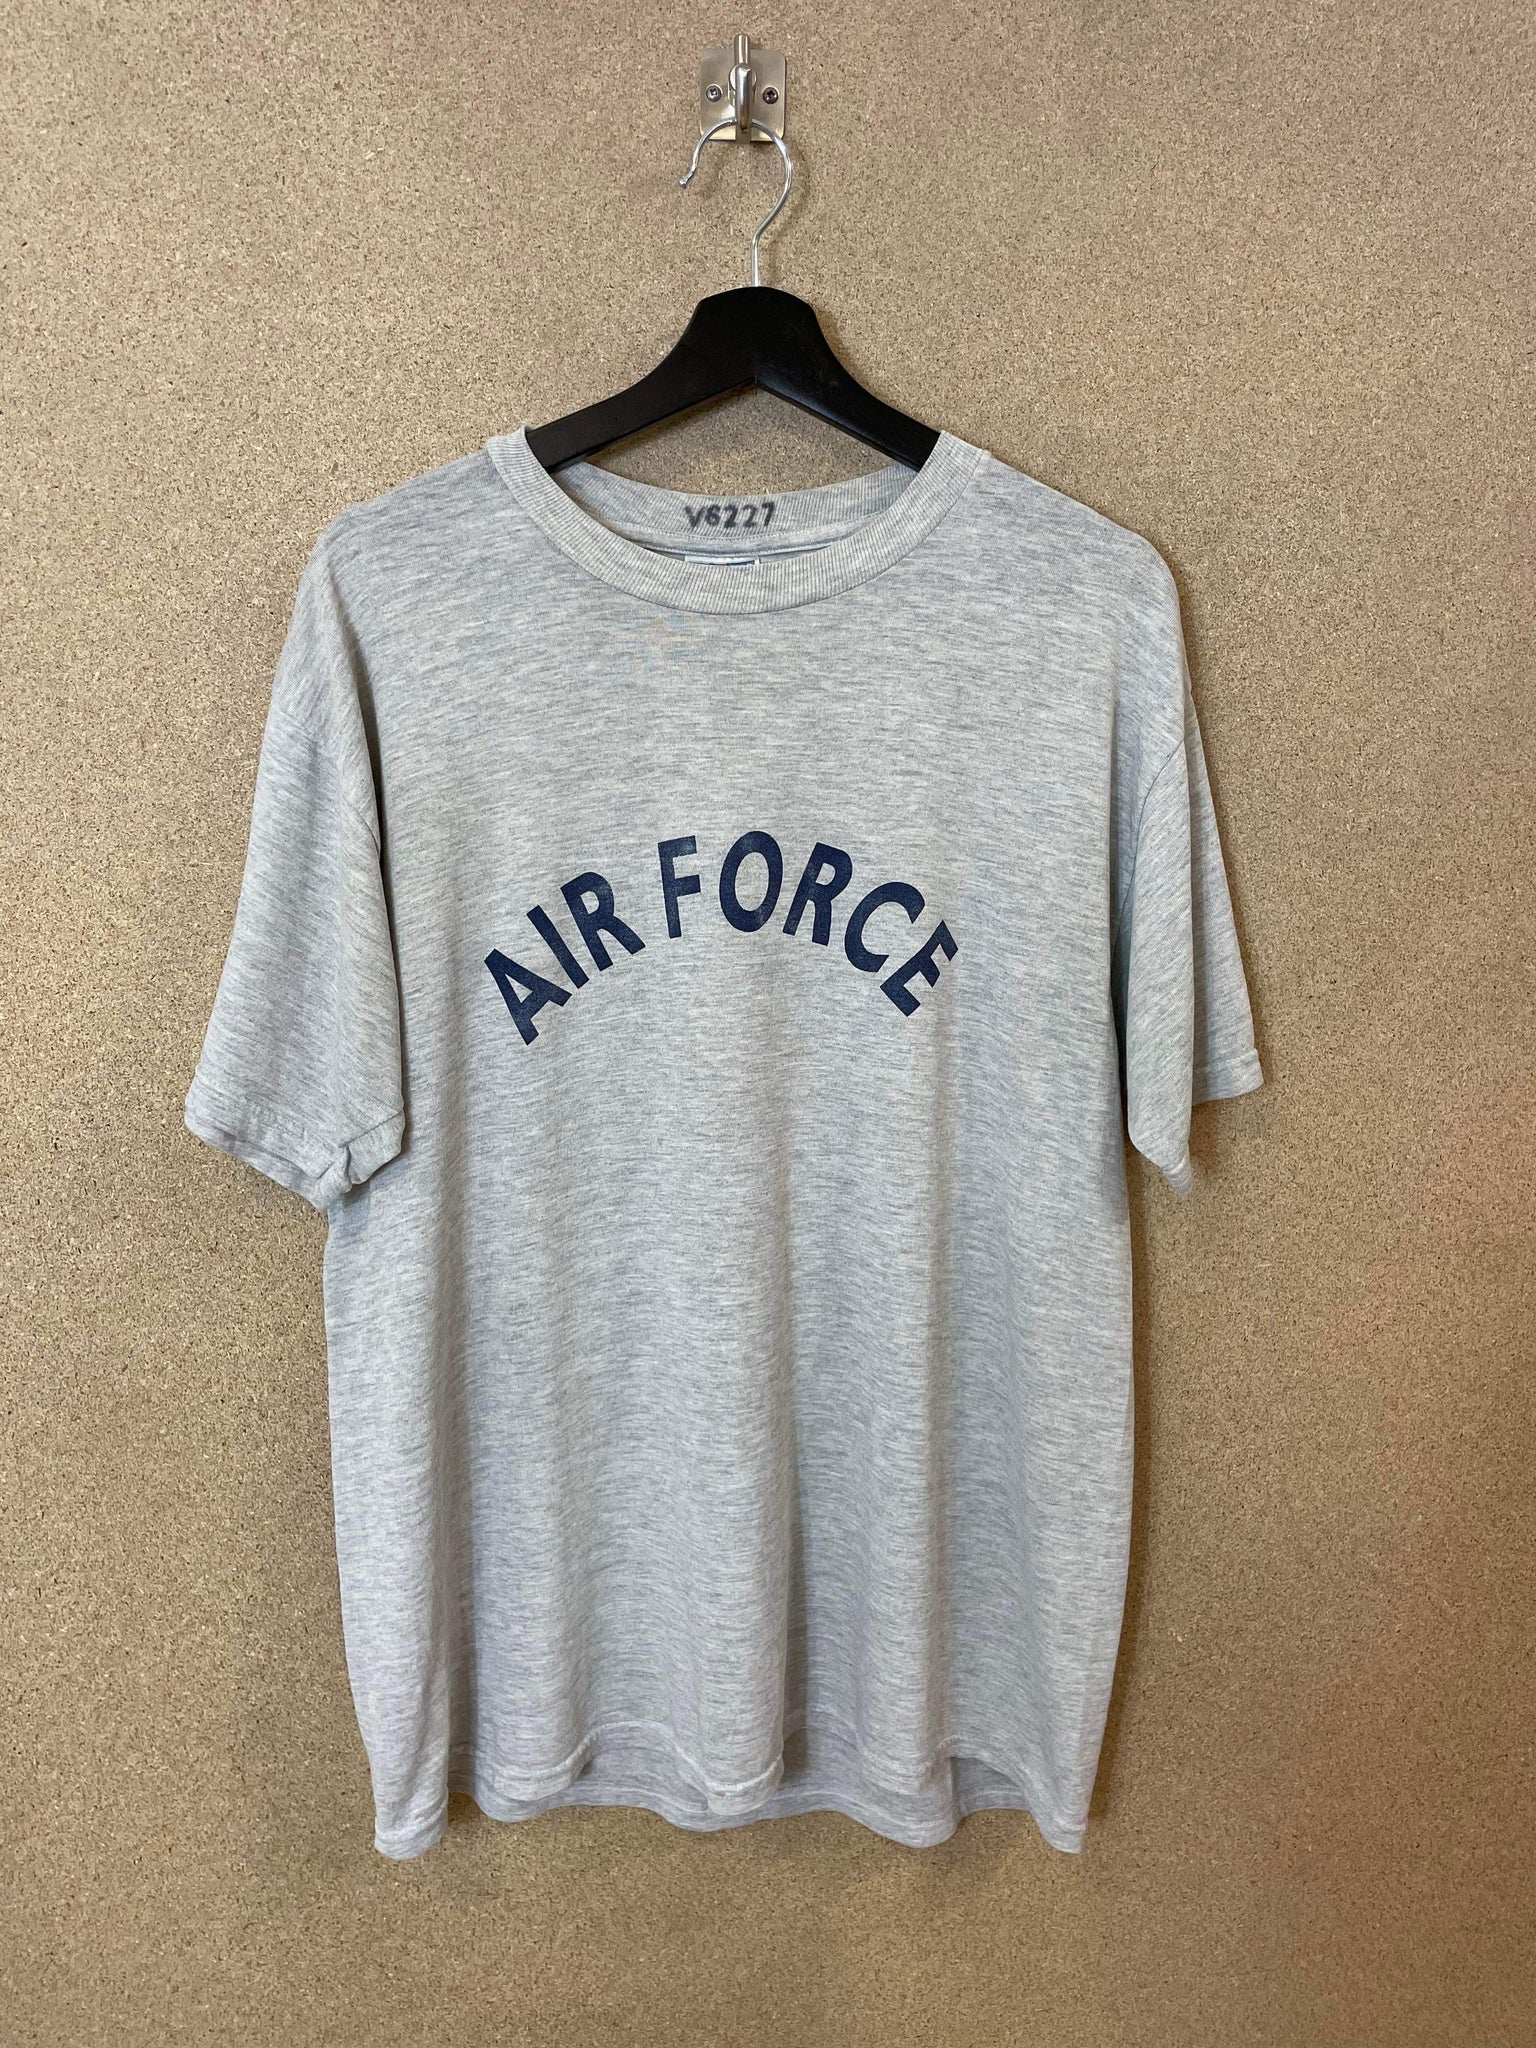 Vintage Air Force 00s Tee - L